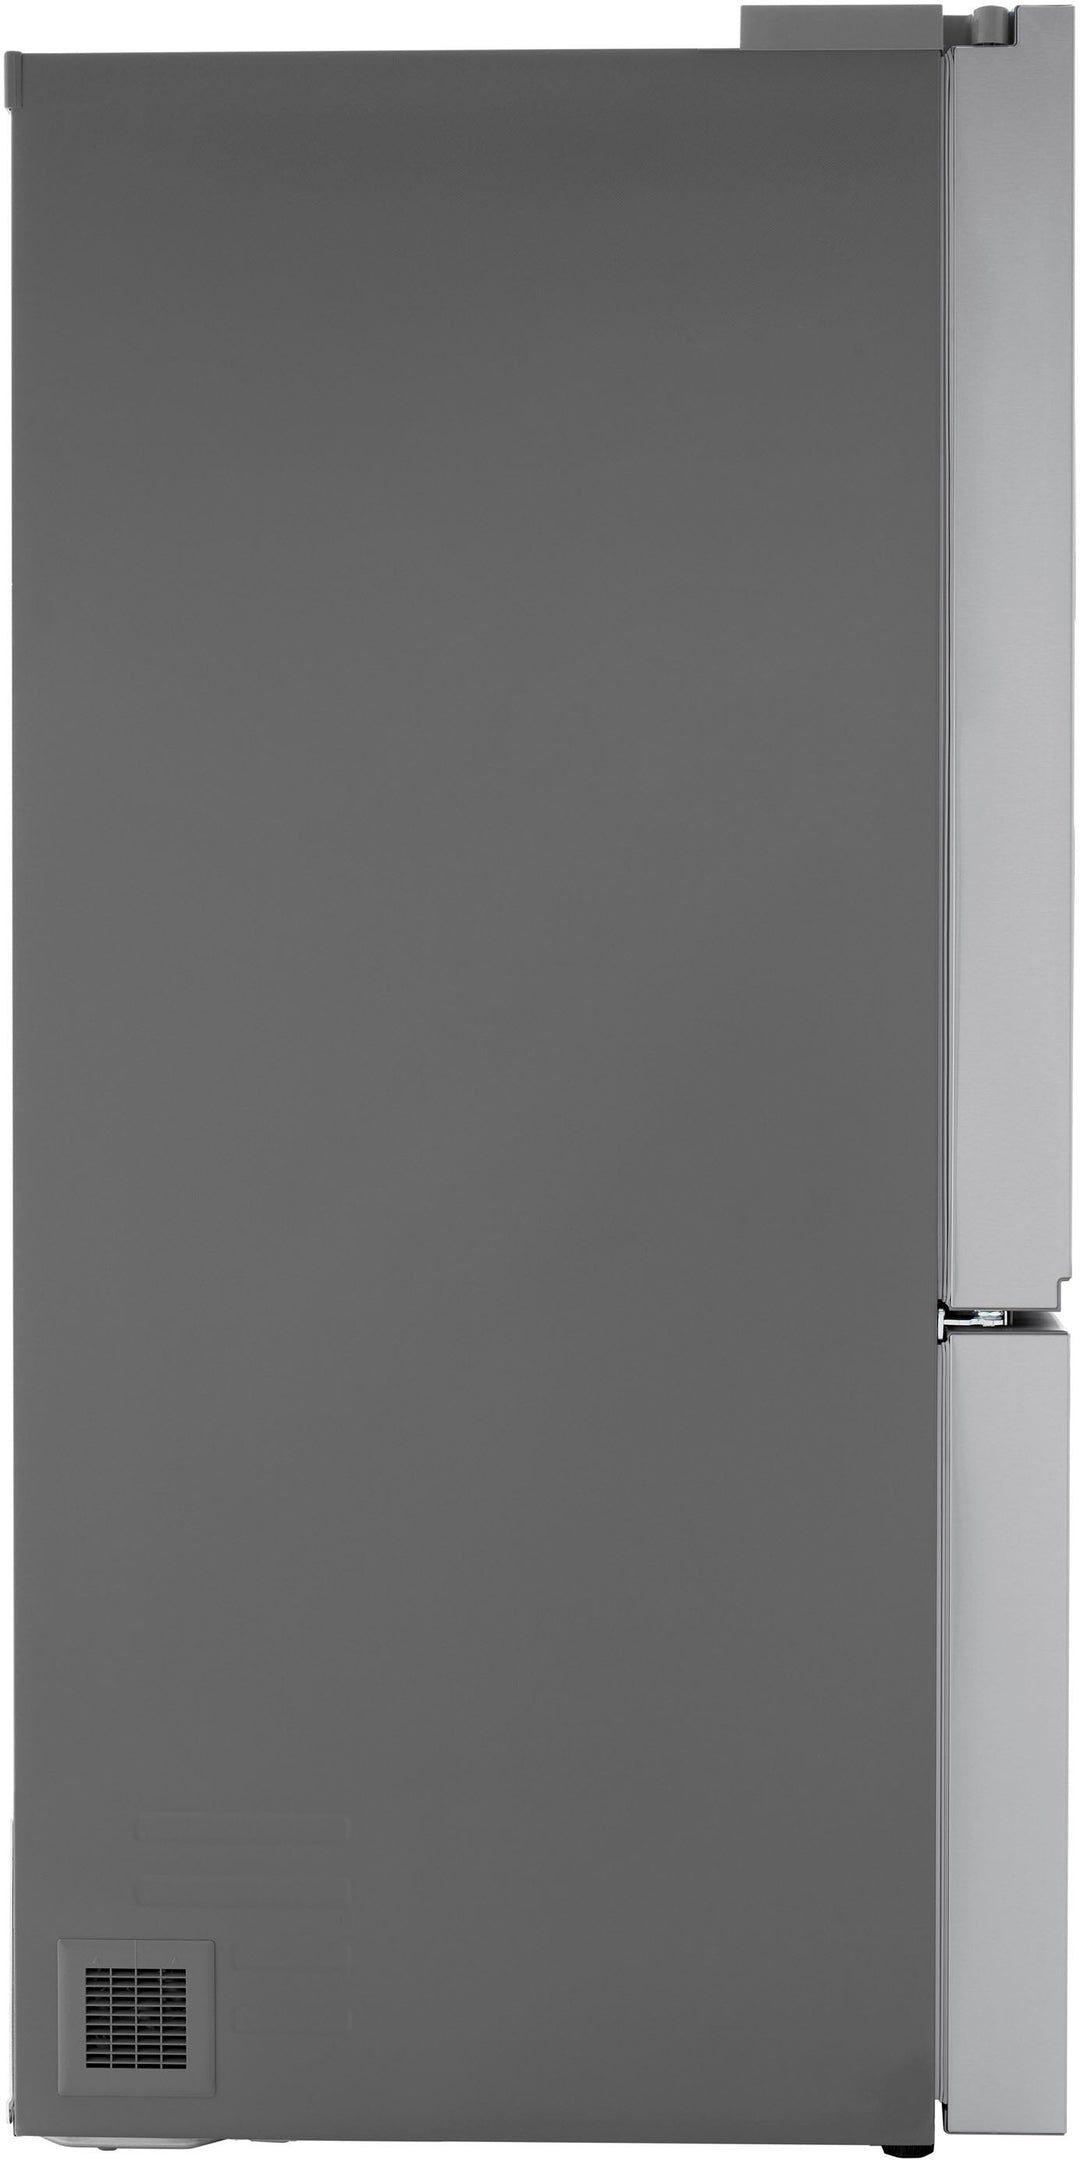 LG - 30.7 cu ft 3 Door French Door Refrigerator with Instaview - Stainless Steel_24